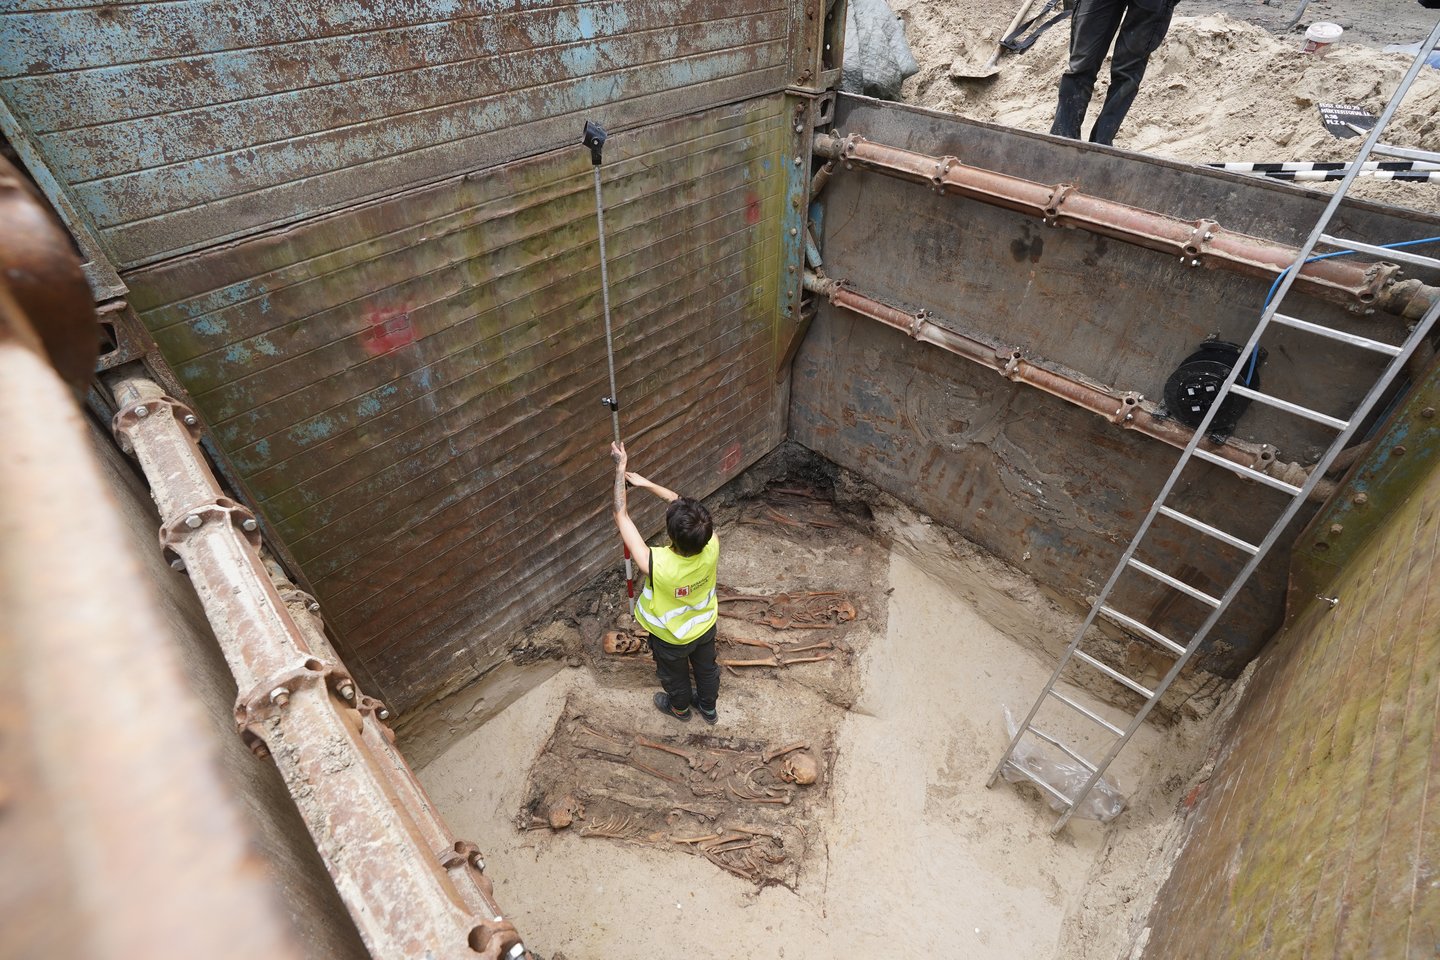  Archeologai matuoja radinius Hiukstertoralės kasinėjimų vietoje. Liubeko archeologai atkasė maždaug 8 000kvadratinių metrų ploto vargšų kapines.<br> DPA / Scanpix nuotr.